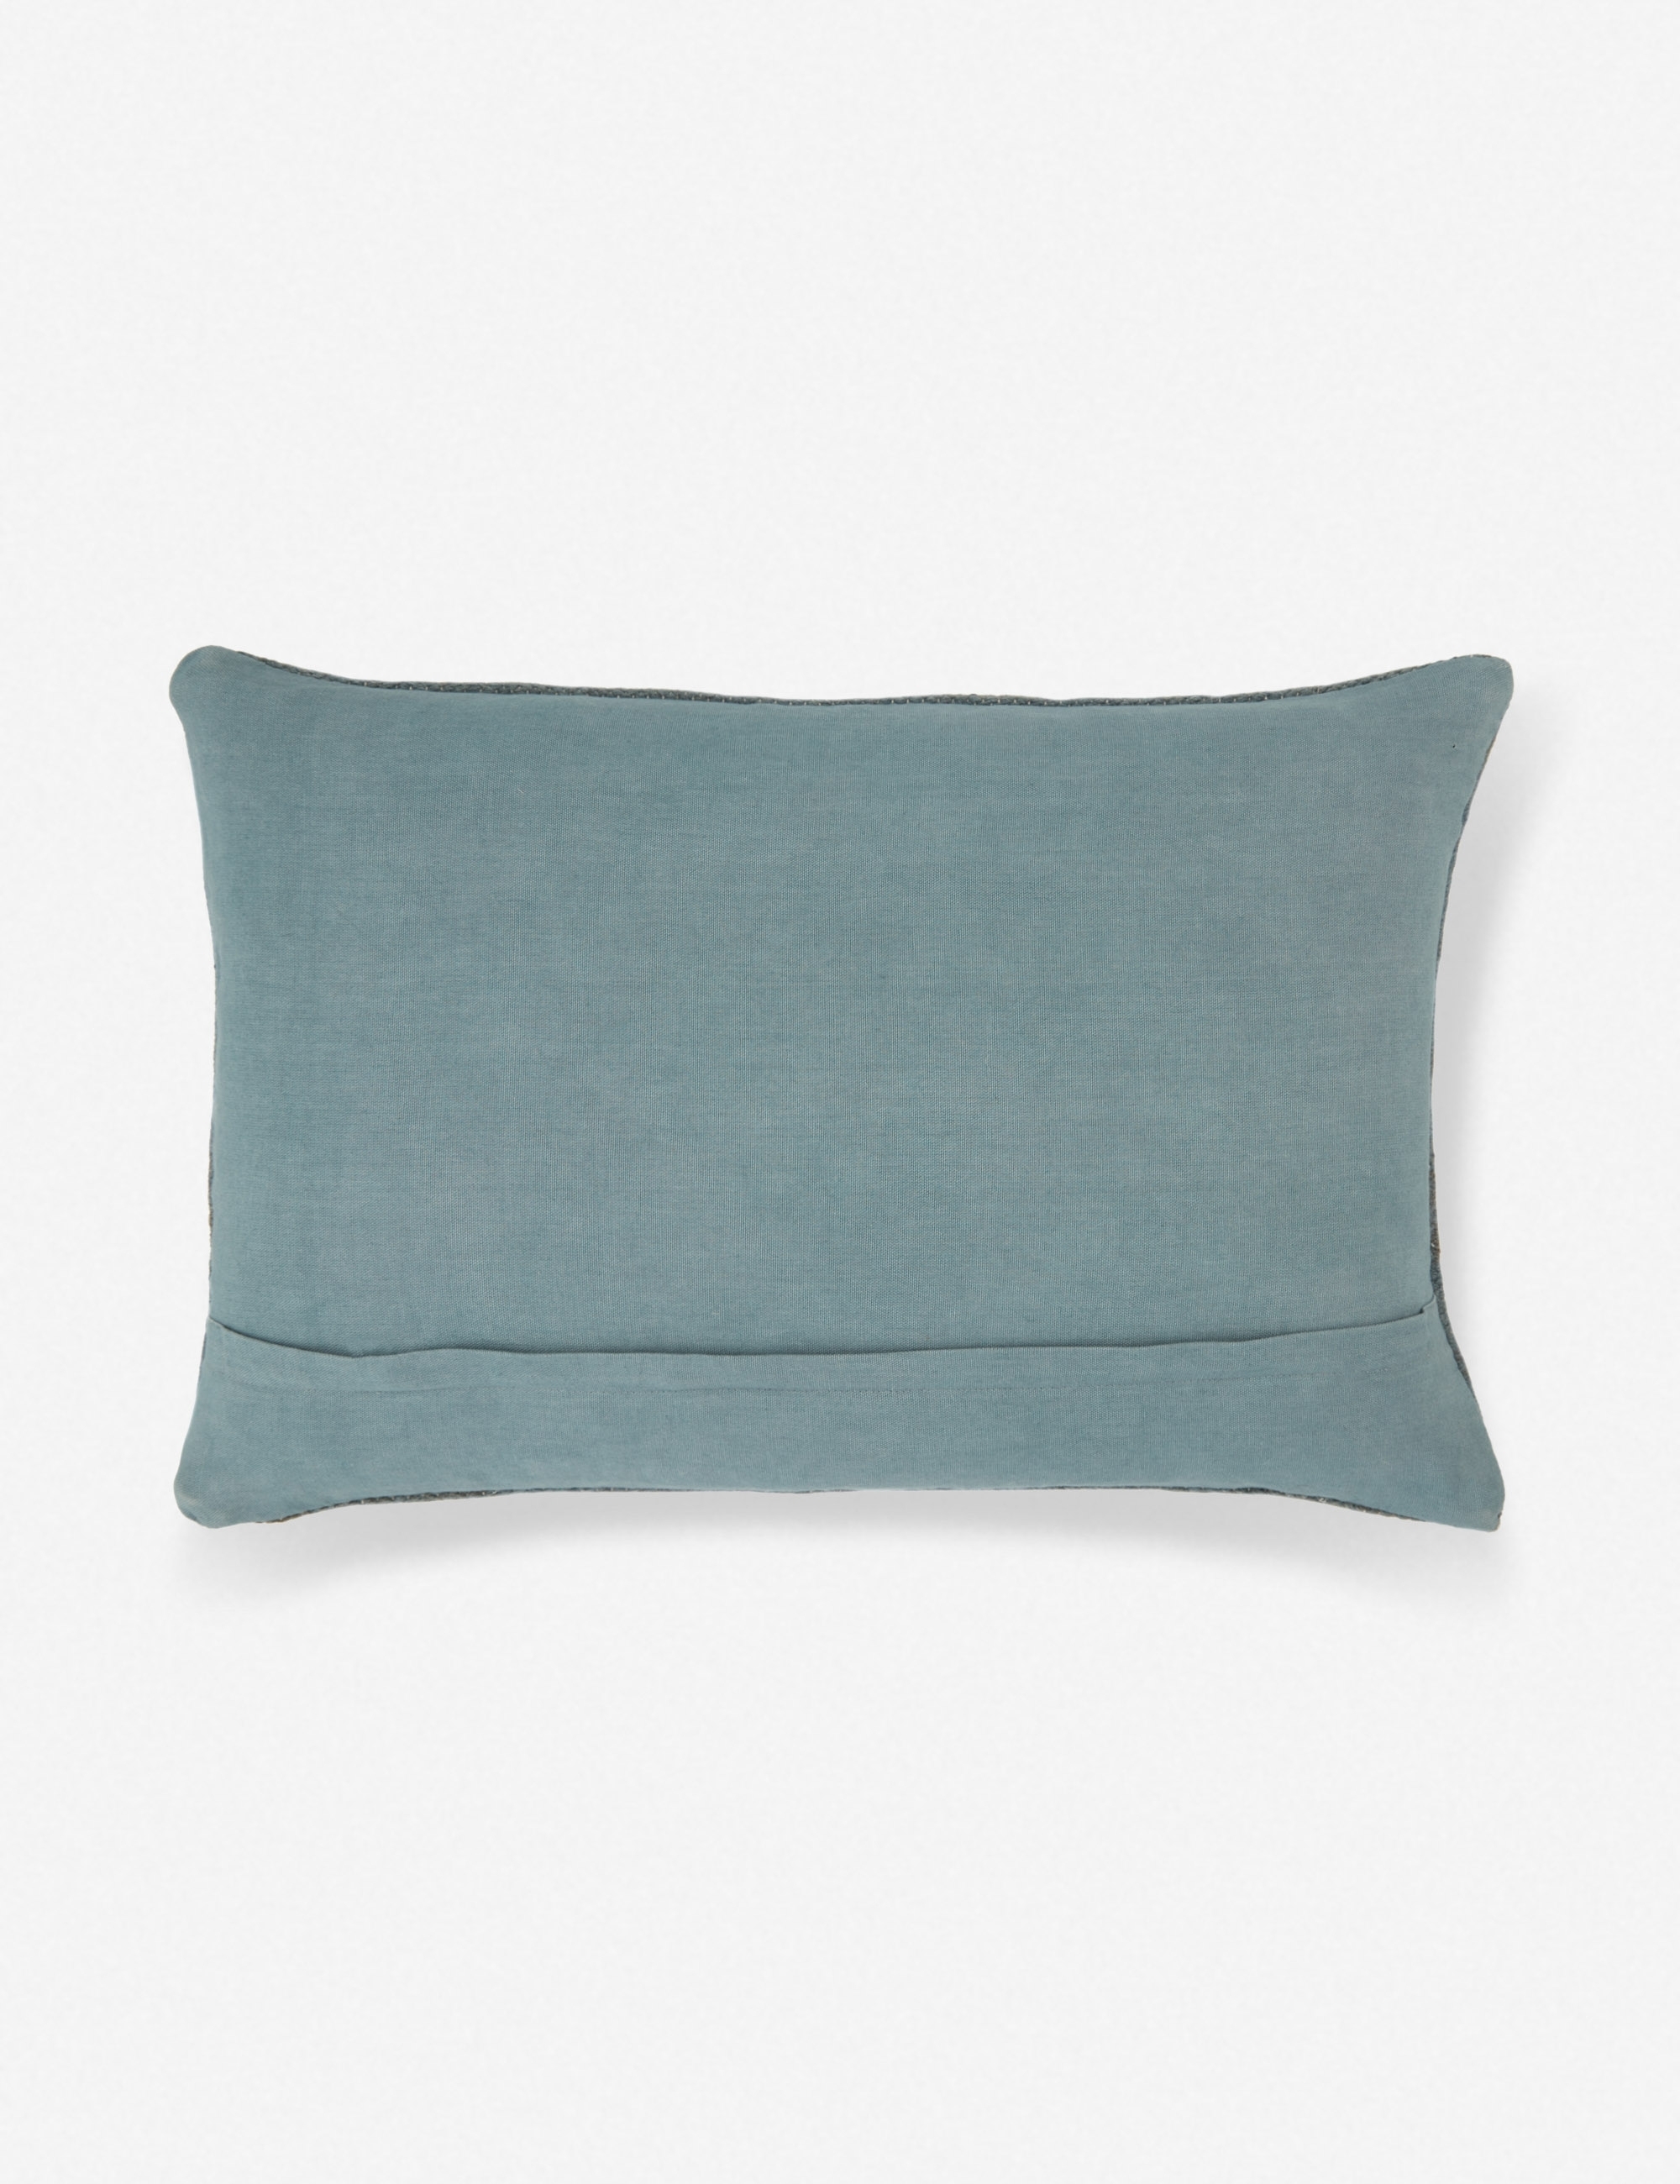 Indigo Lumbar Pillow - Image 1